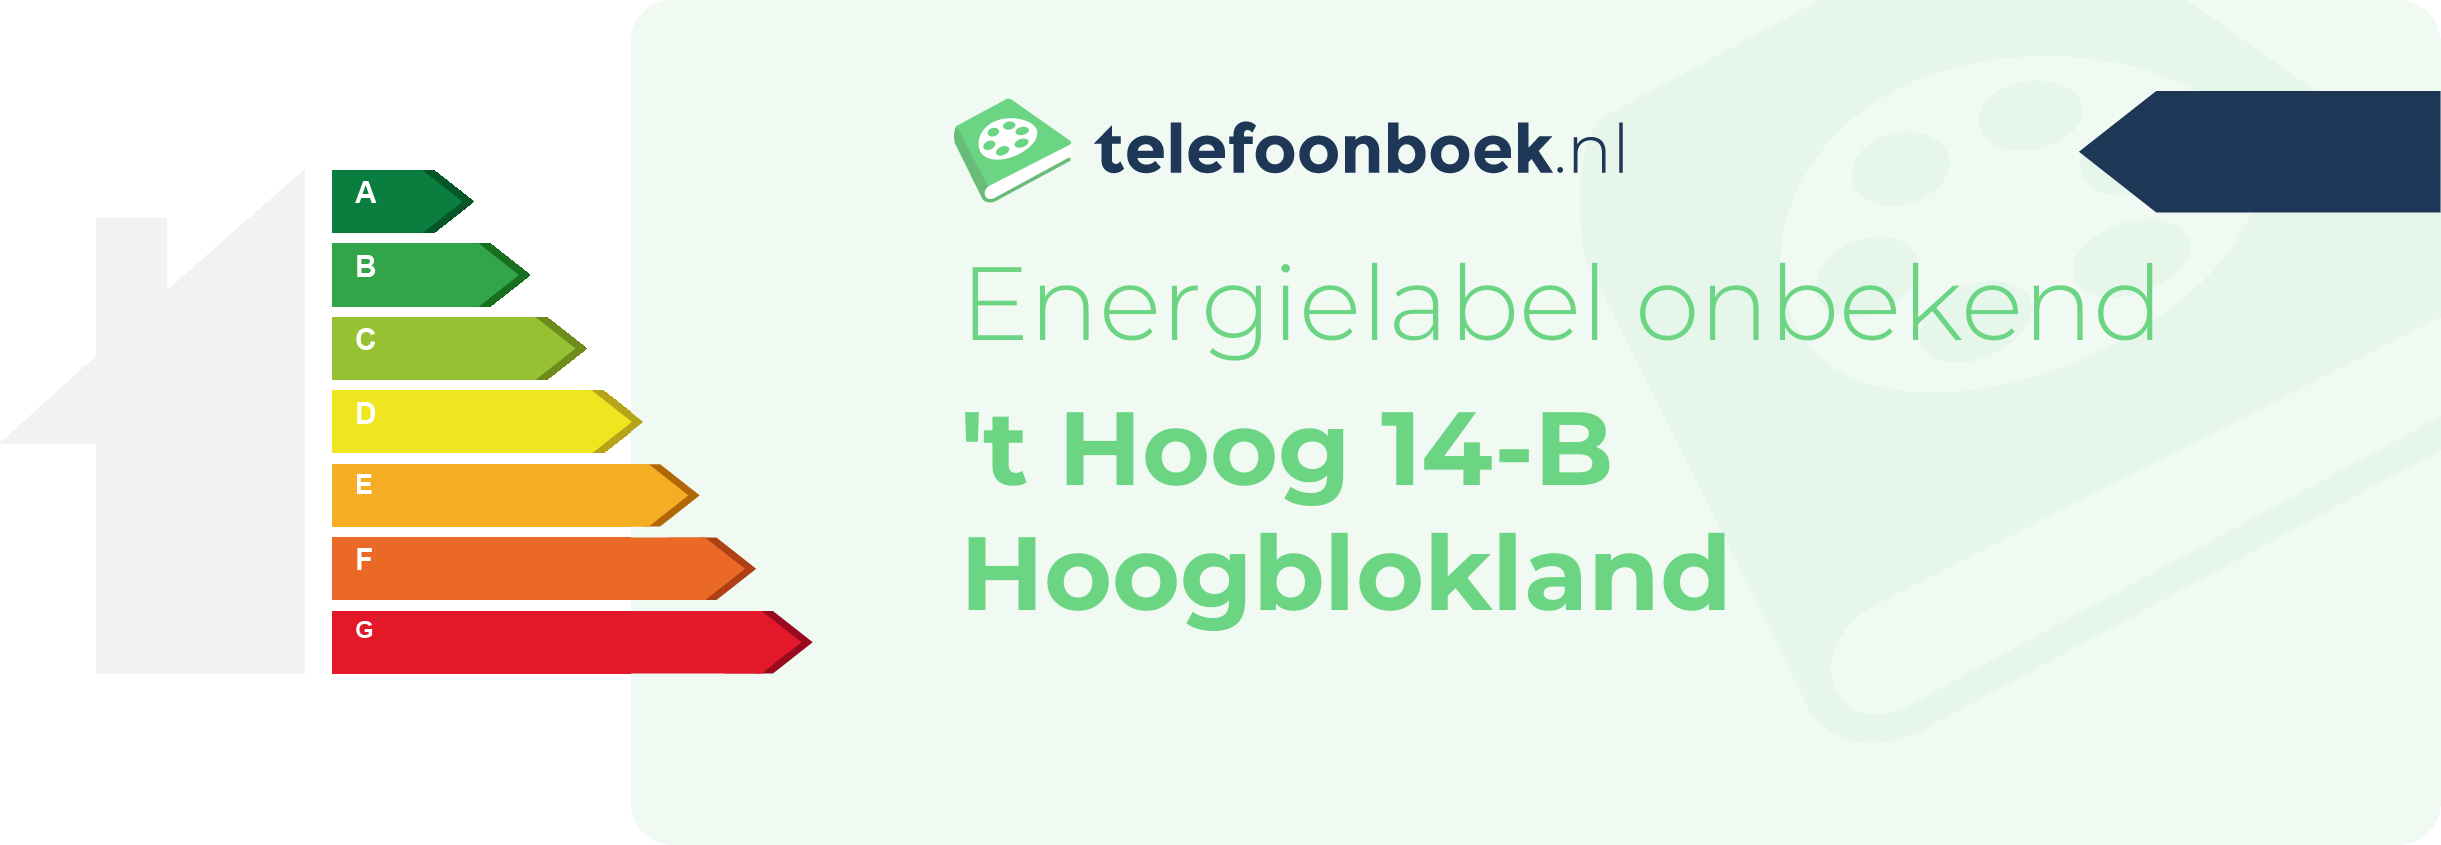 Energielabel 't Hoog 14-B Hoogblokland